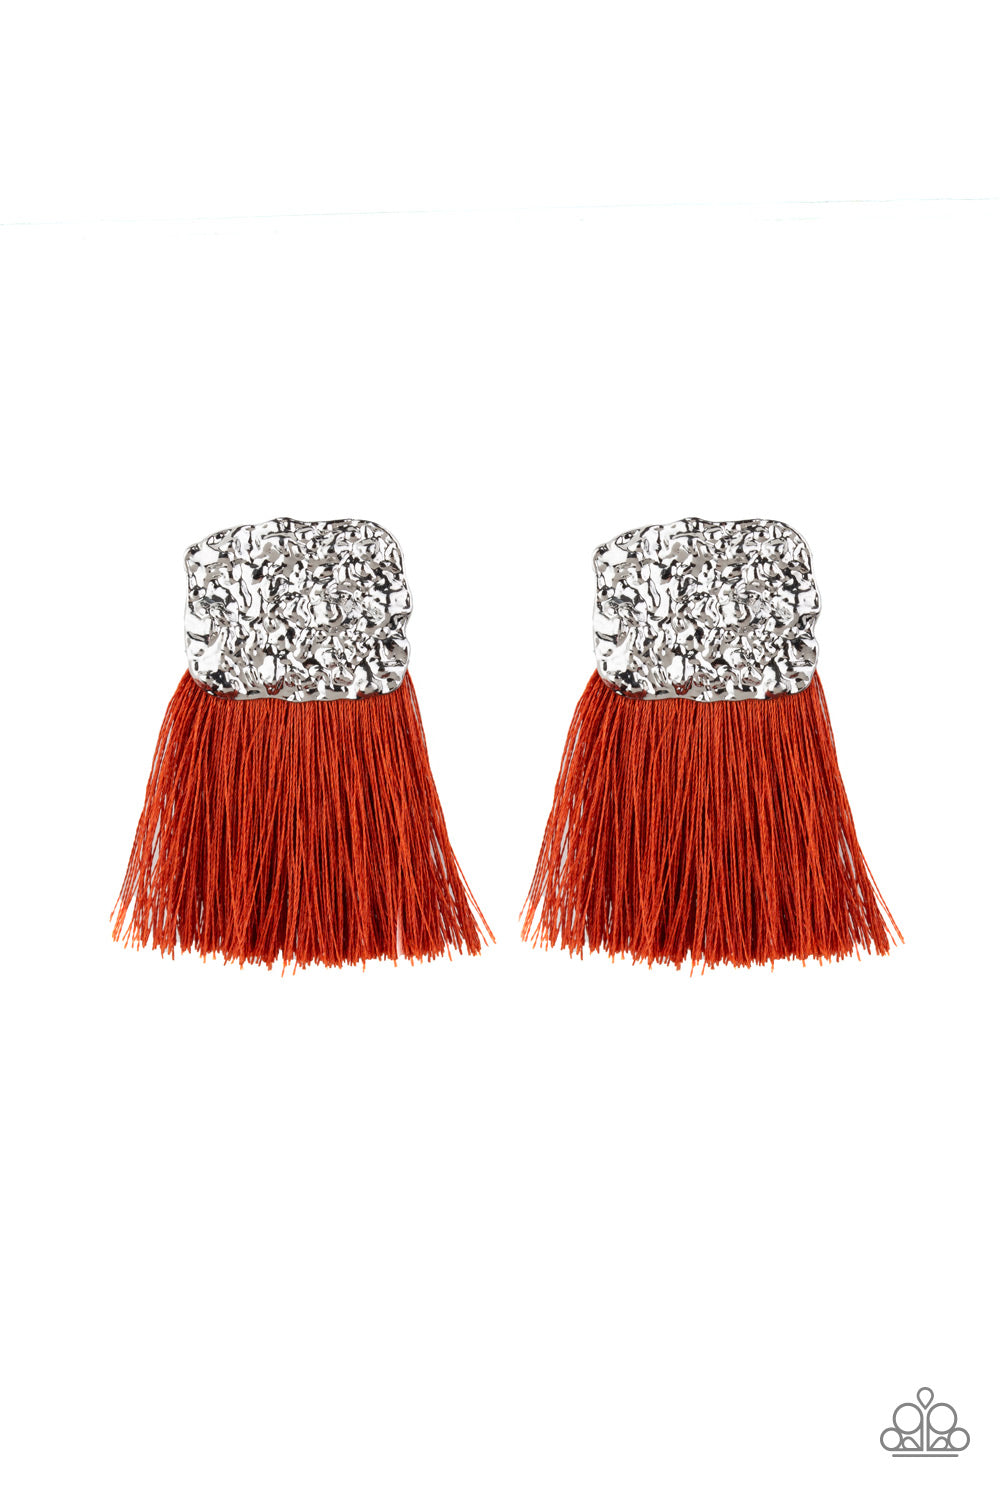 Paparazzi - Plume Bloom - Orange & Silver Earrings